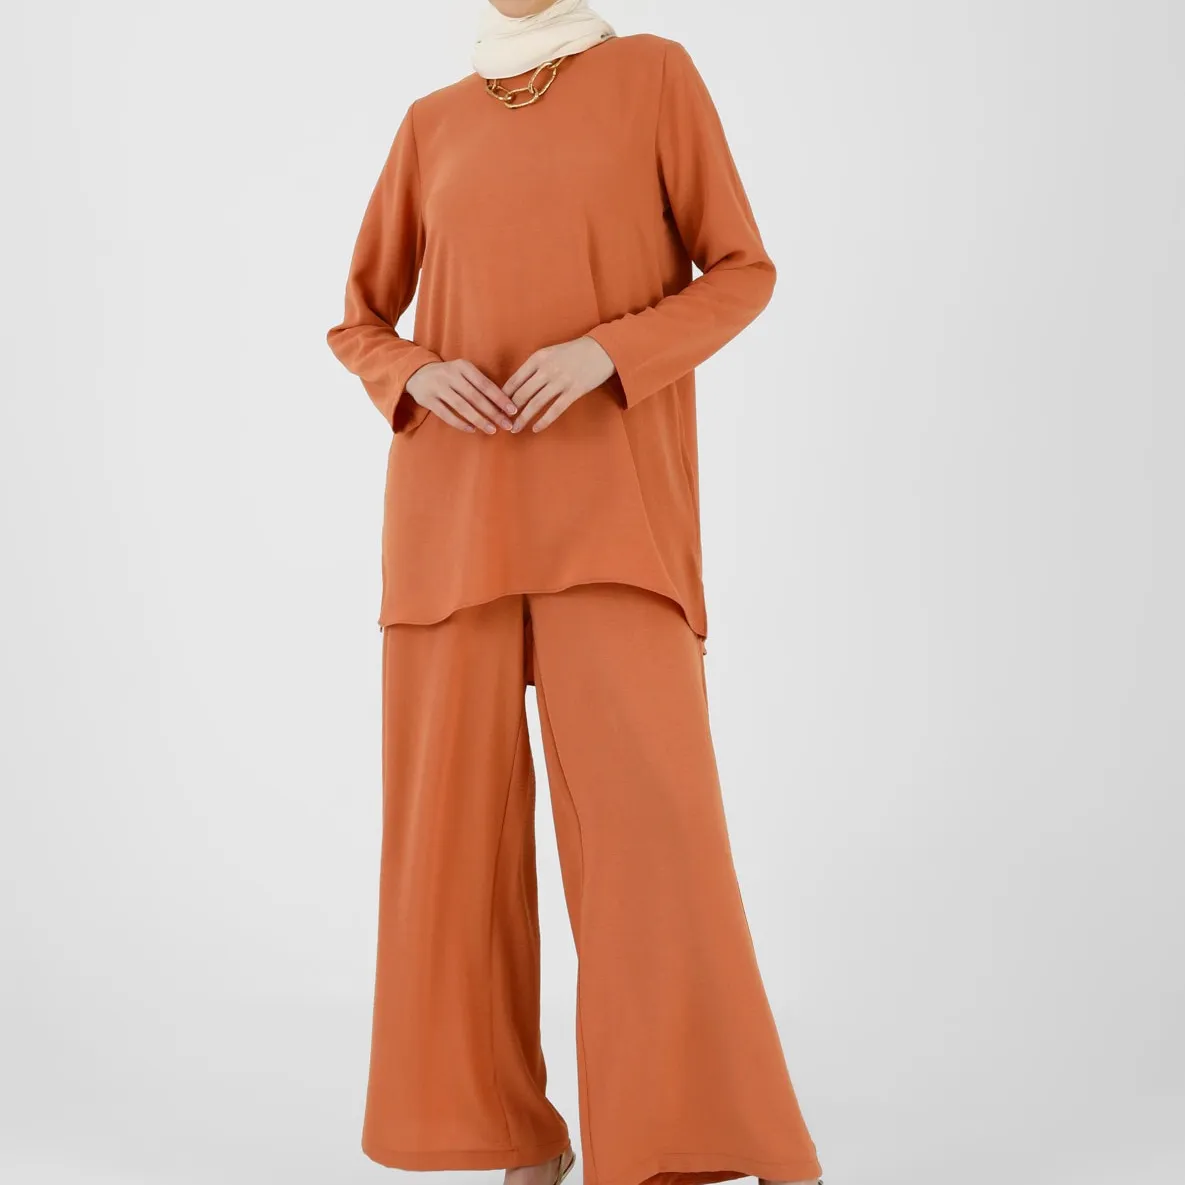 AM131C personalización musulmana mujer blusa pantalones conjuntos manga larga nueva moda elegante islámica ropa Oficina mujer señora traje